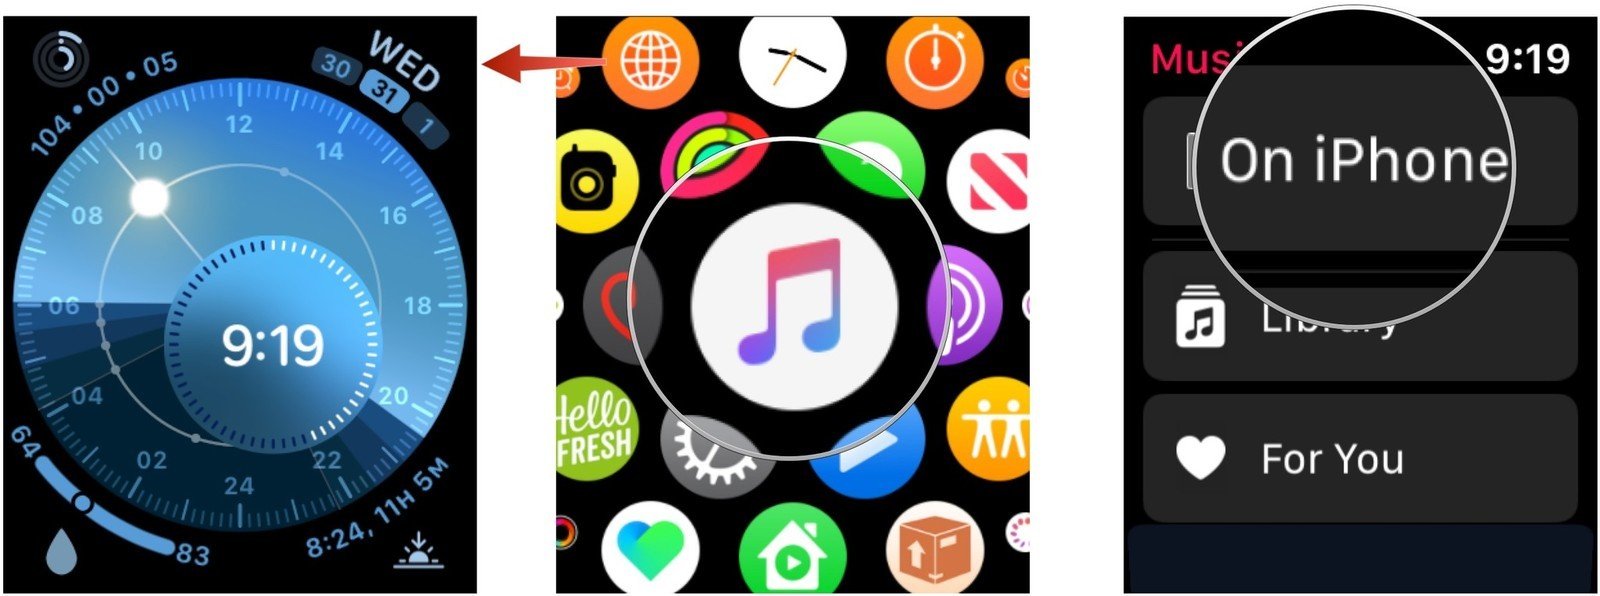 Музыкальное приложение Apple Watch